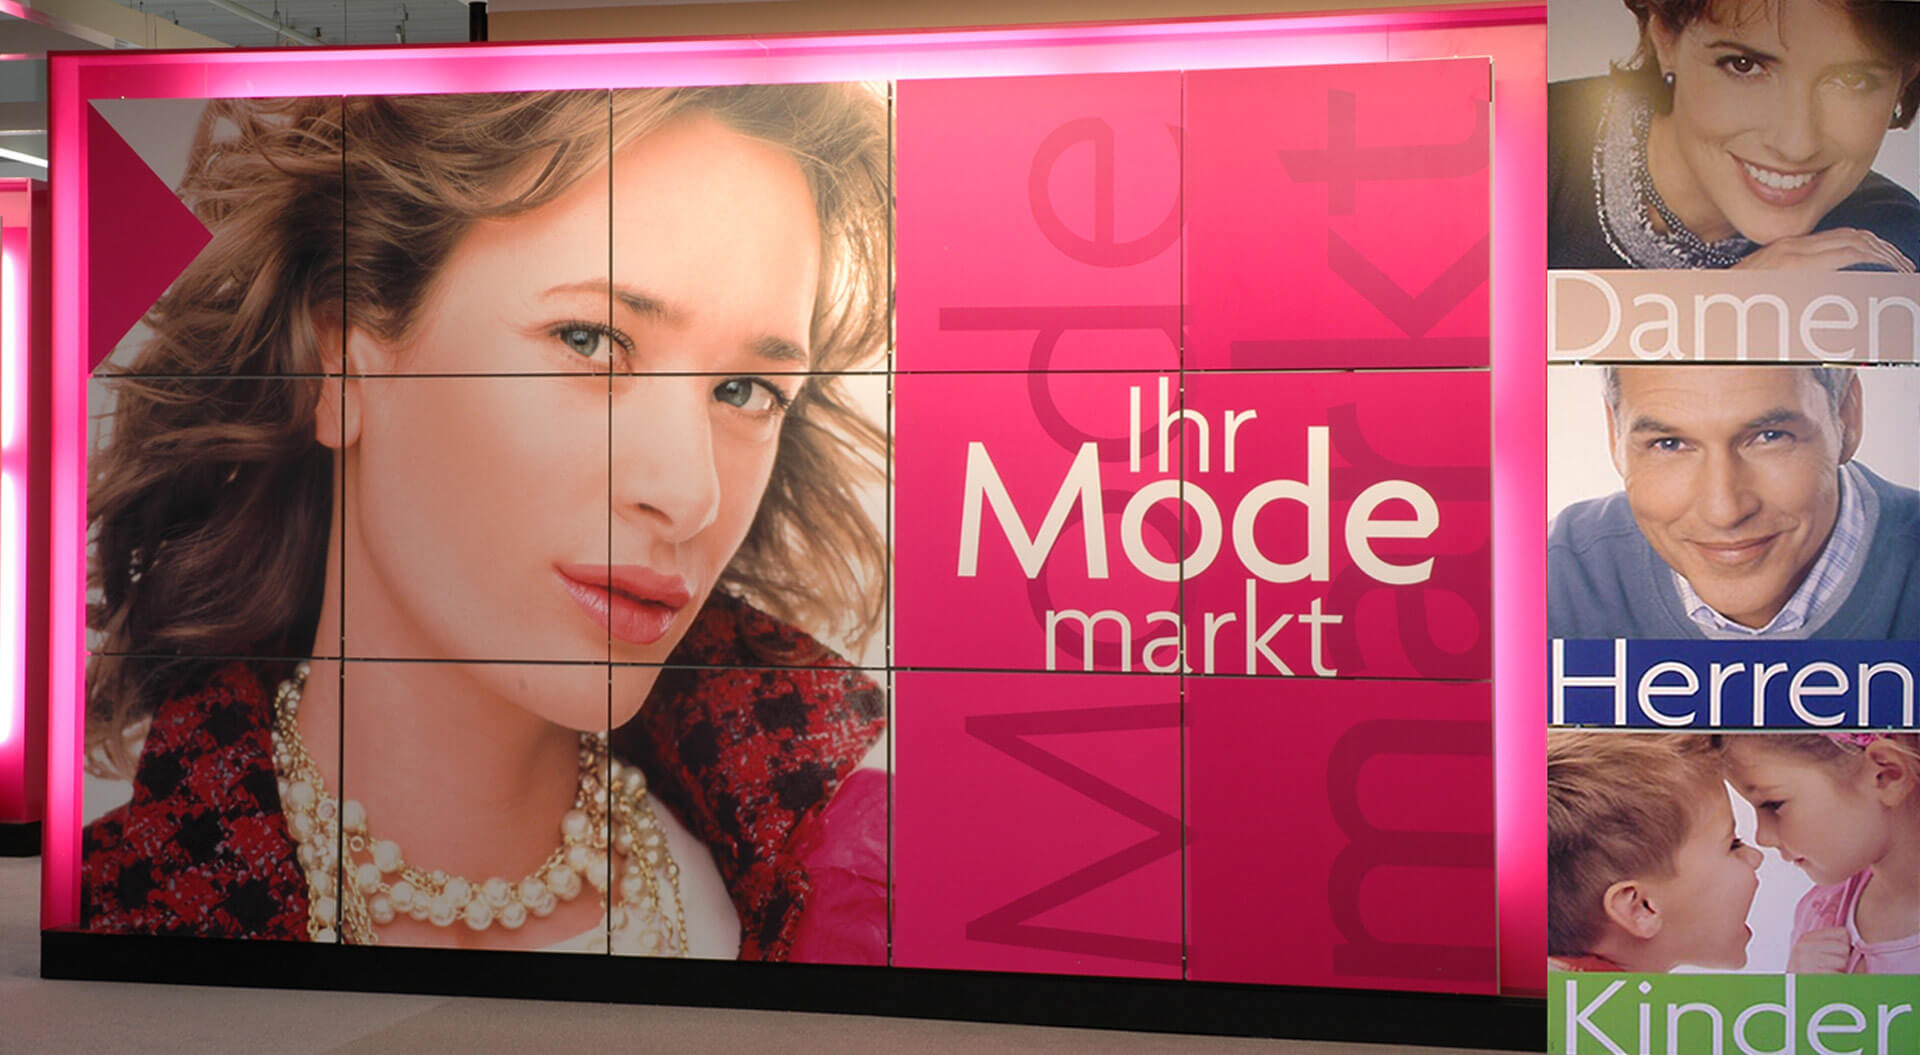  Adler Fashion Store Germany best retail store design, rebrand Ihr Mode Markt department branding